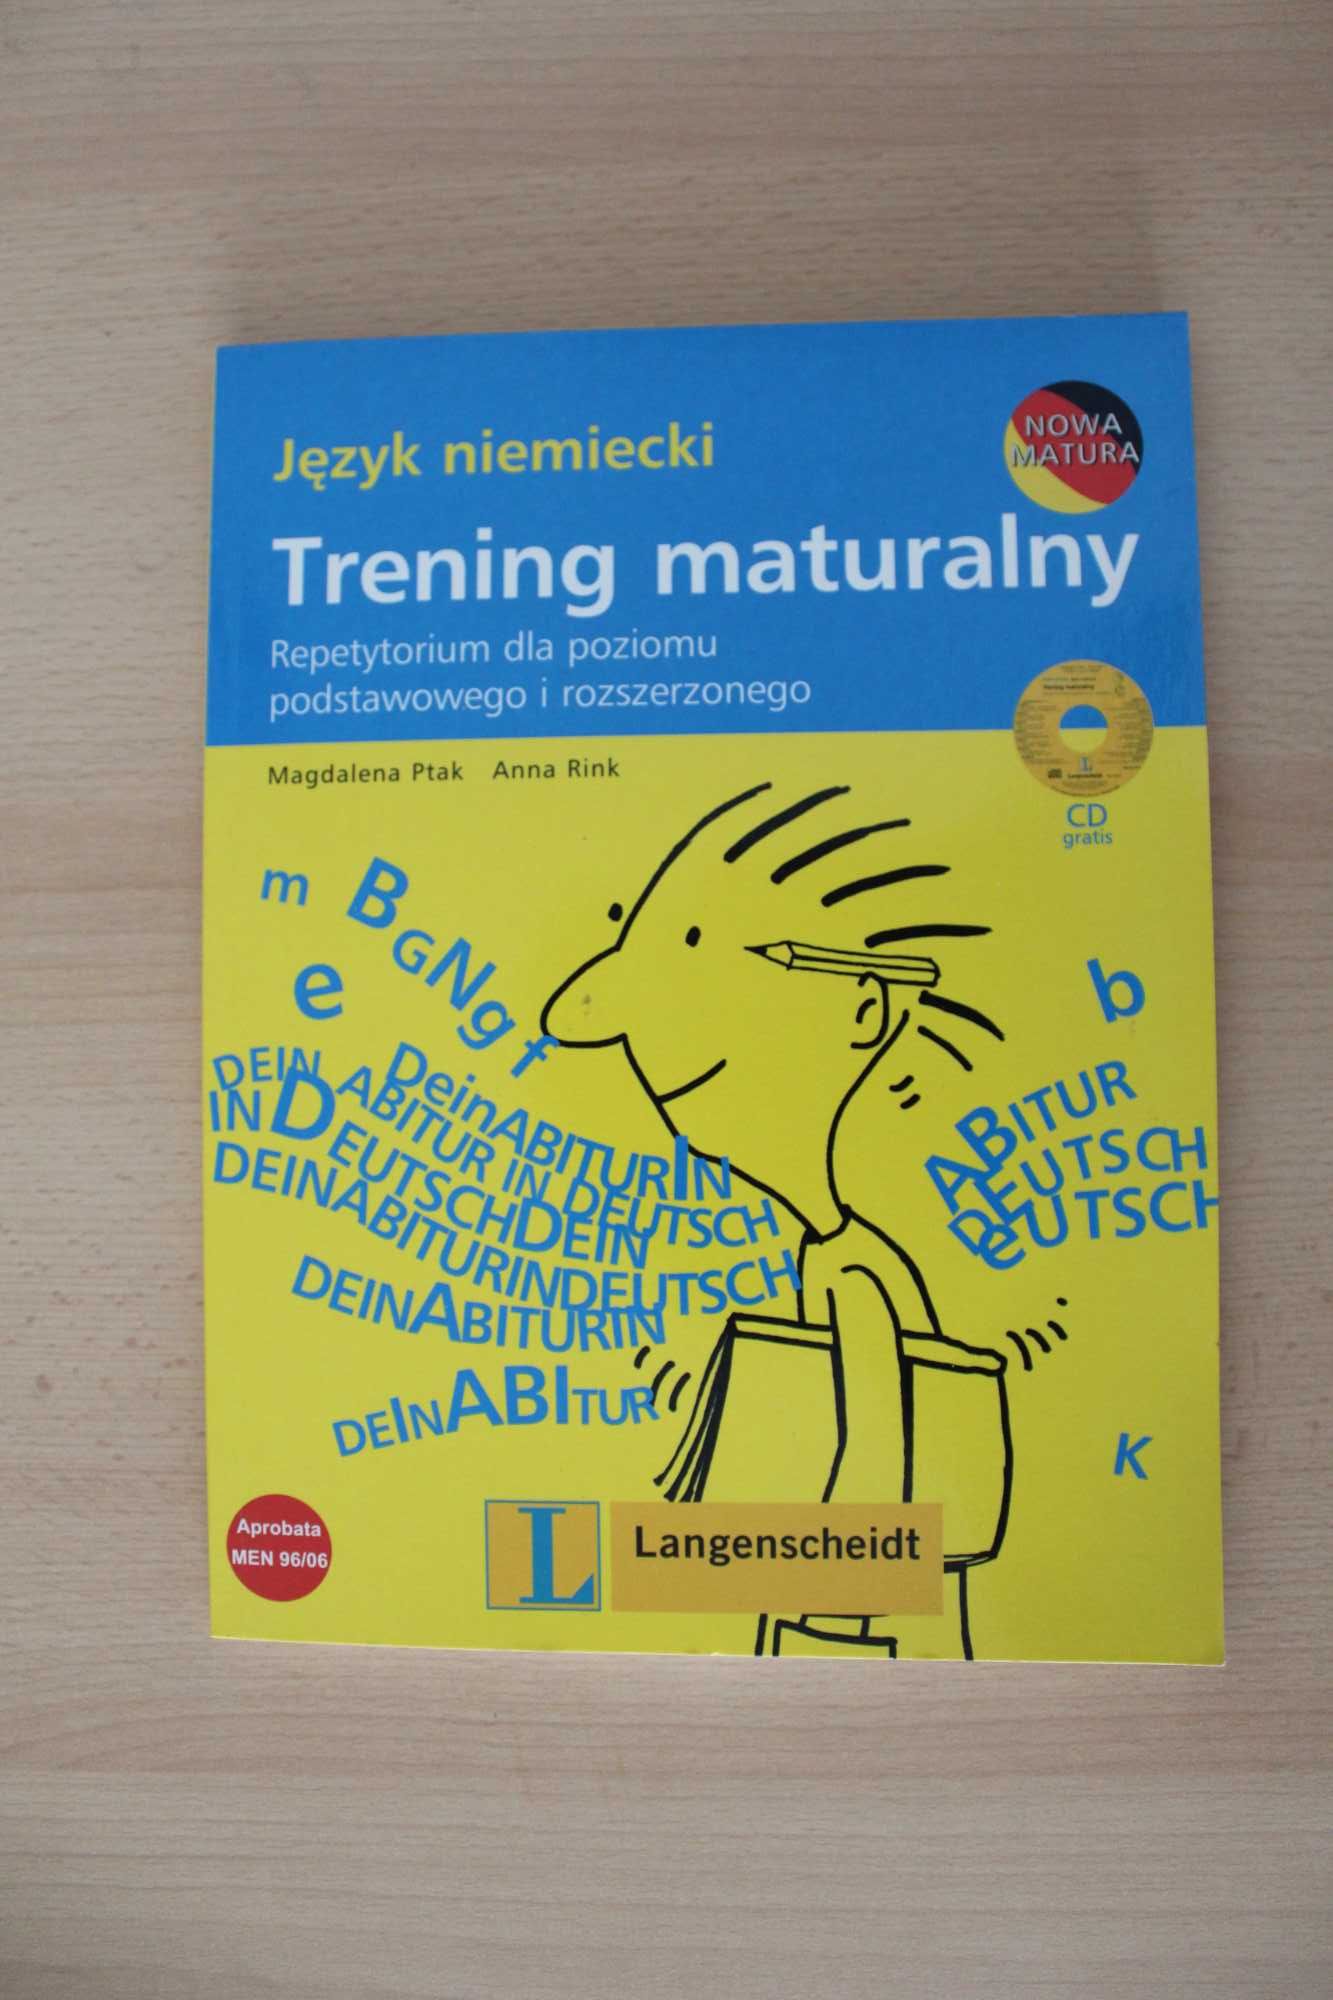 Jezyk Niemiecki Trening Maturalny repetytorium podstawowy rozszerzony